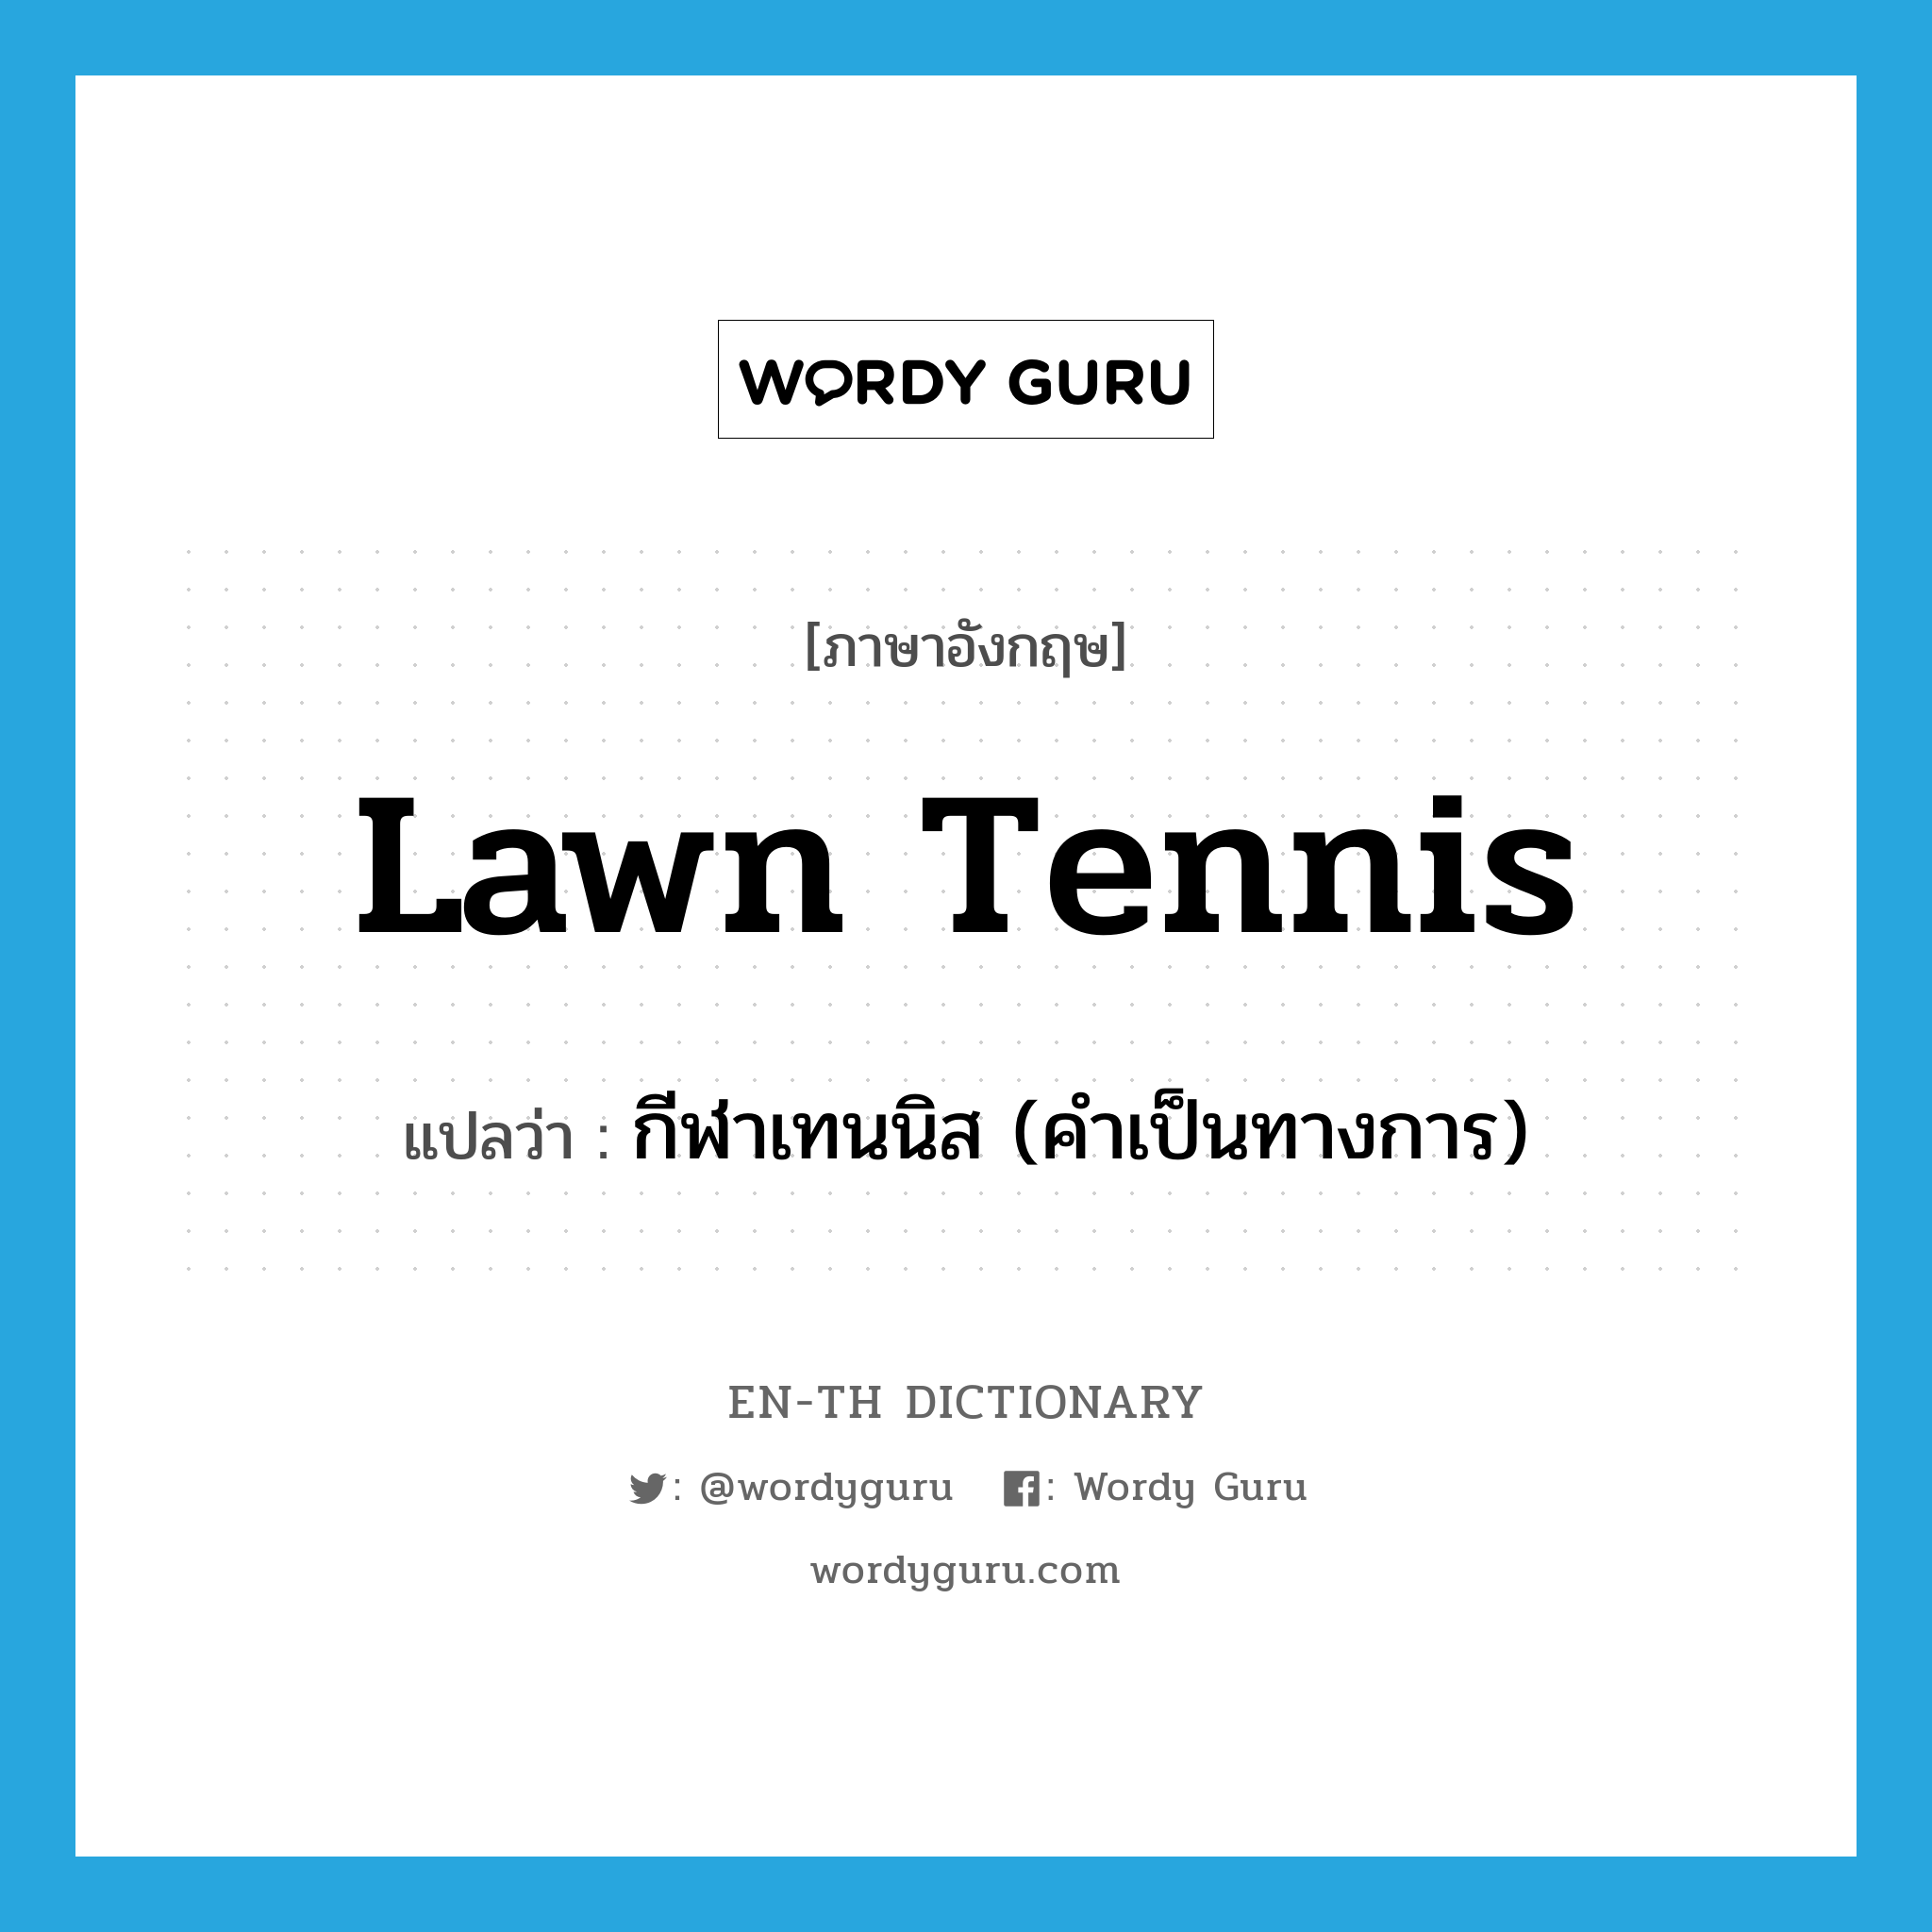 กีฬาเทนนิส (คำเป็นทางการ) ภาษาอังกฤษ?, คำศัพท์ภาษาอังกฤษ กีฬาเทนนิส (คำเป็นทางการ) แปลว่า lawn tennis ประเภท N หมวด N